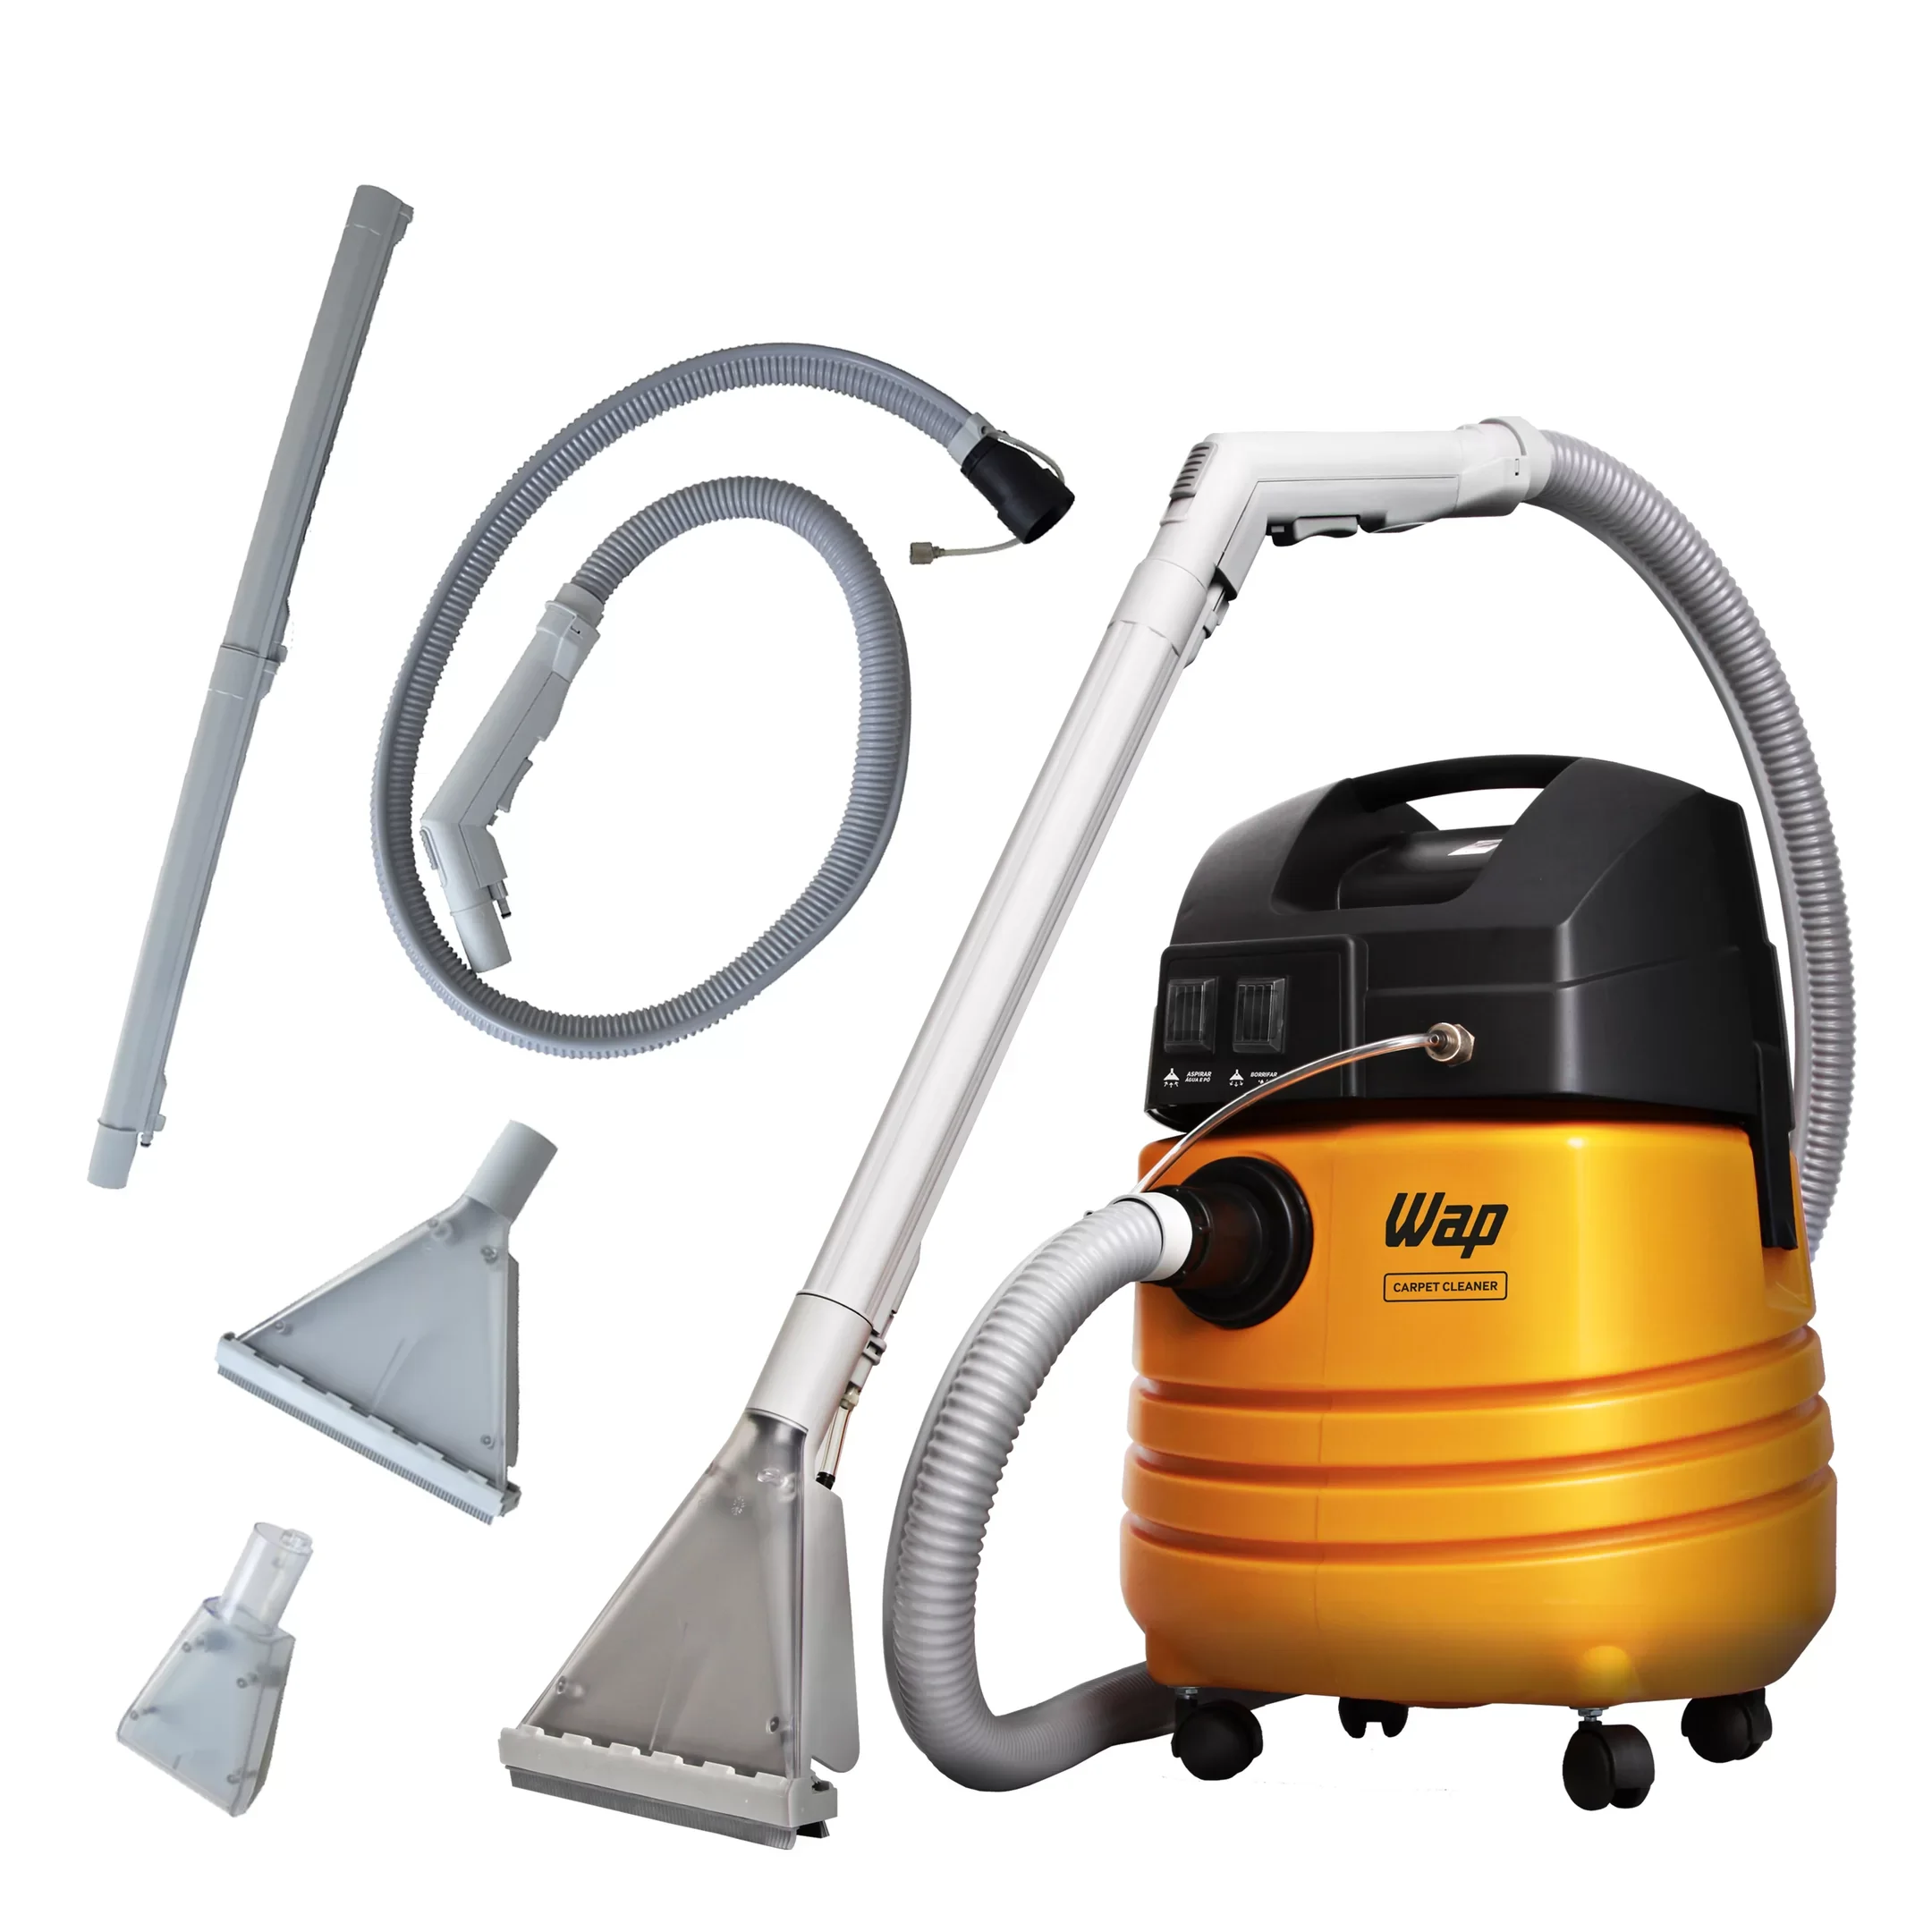 Extratora de Limpeza WAP Carpet Cleaner 1600W Uso Profissional Bocal de Sopro, Borrifa e Aspira 220V Amarelo/Preto - 4